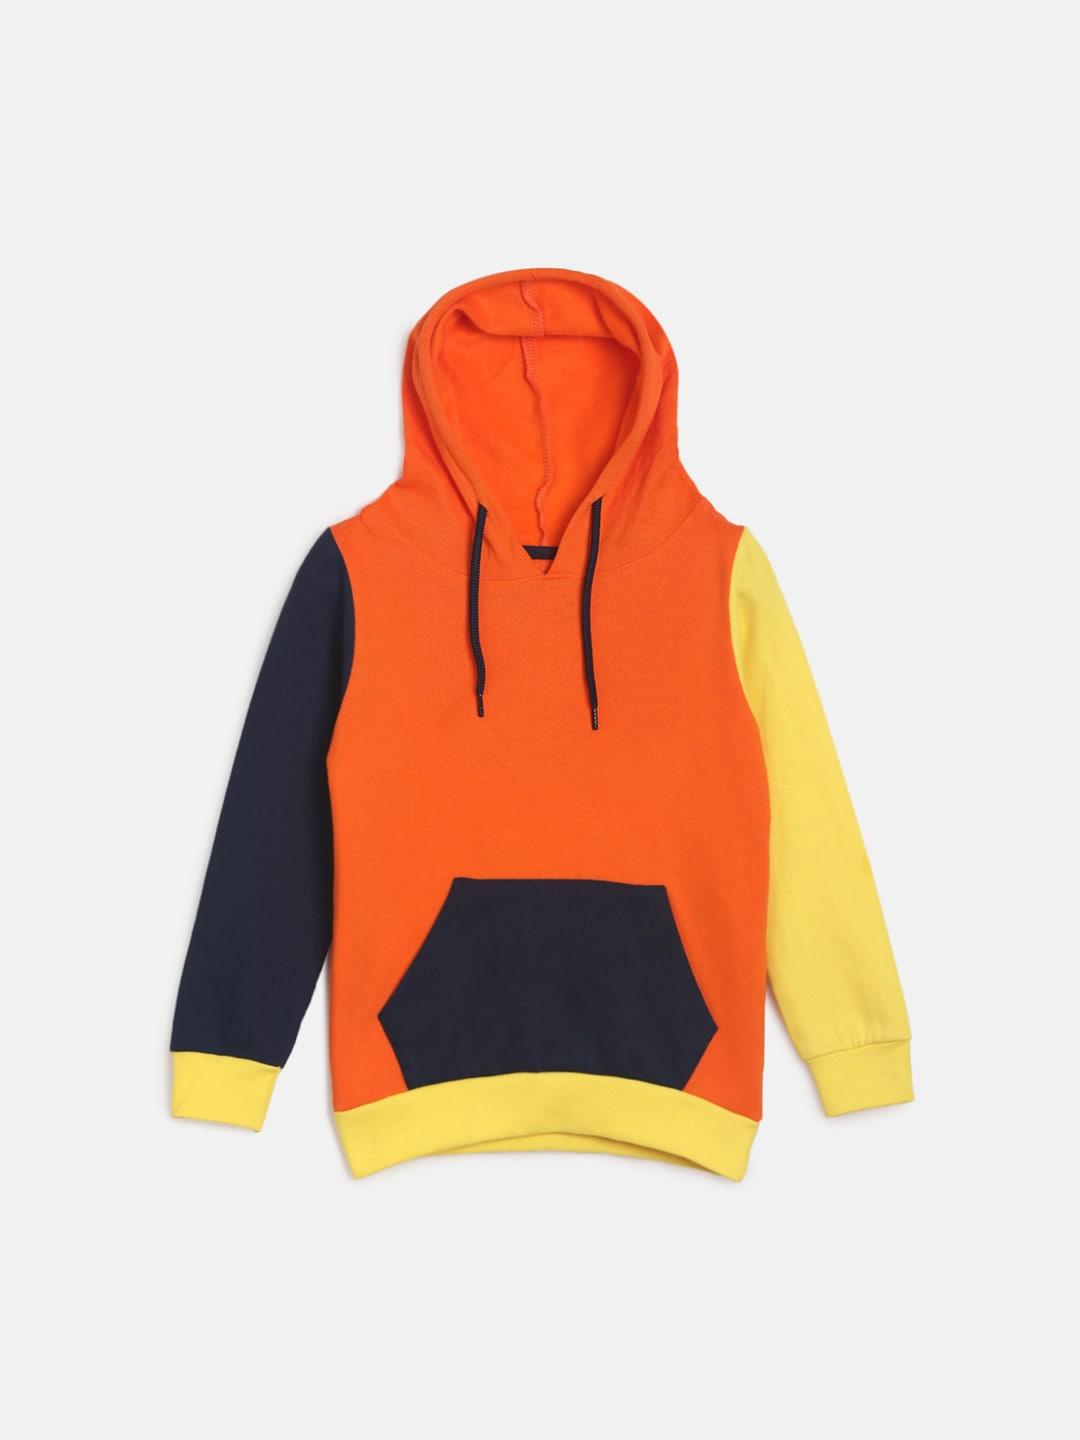 TALES & STORIES Boys Orange Hooded Sweatshirt